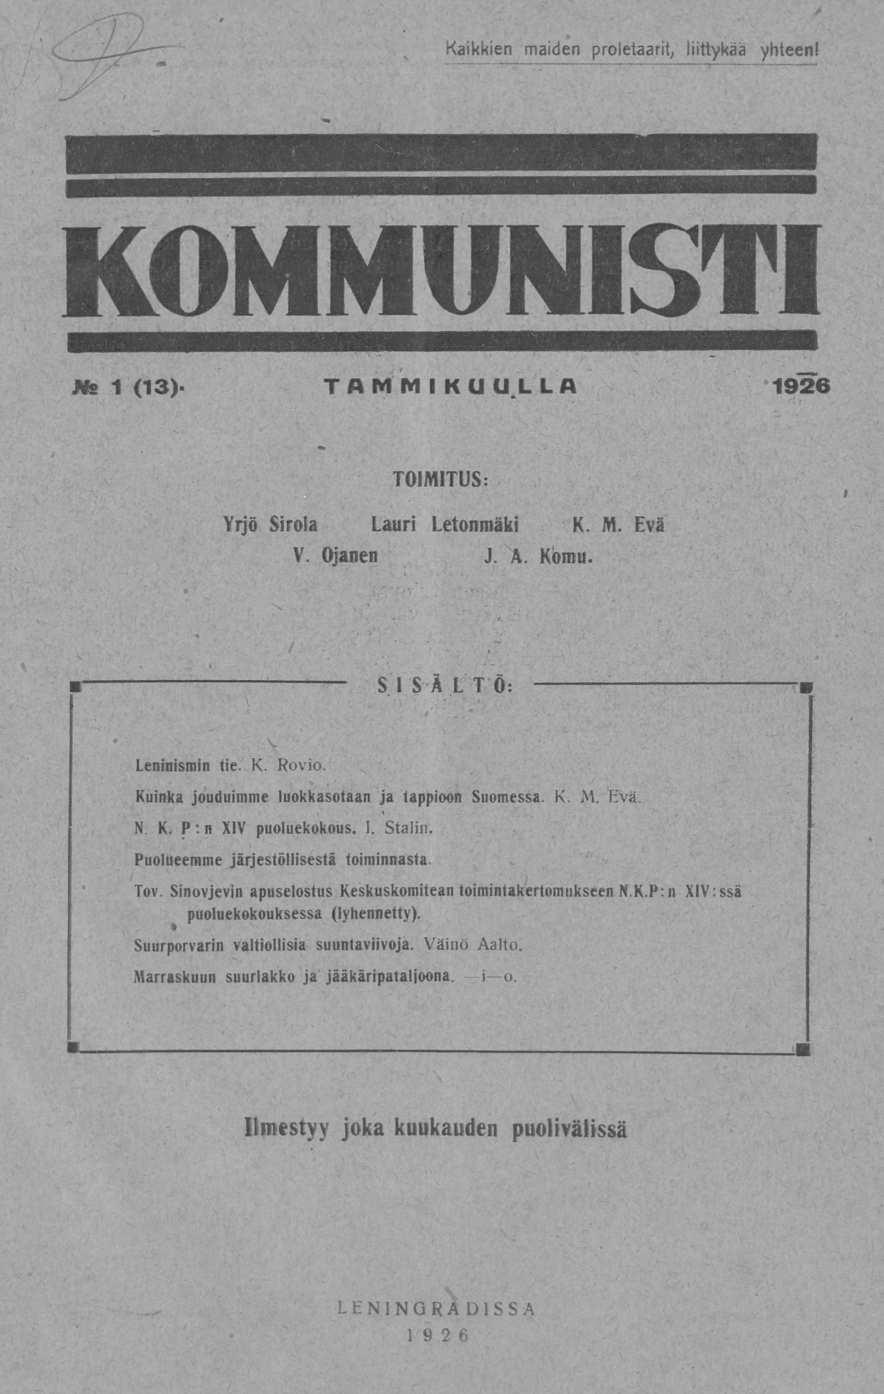 Kaikkien maiden proletaarit, liittykää yhteen! Us 1 (13). TAMMIKUULLA 1926 TOIMITUS: Yrjö Sirola Lauri Letonmäki K. M. Evä V. Ojanen J. A. Kbmu. SISÄLTÖ: Leninismin tie. K. Rovio.